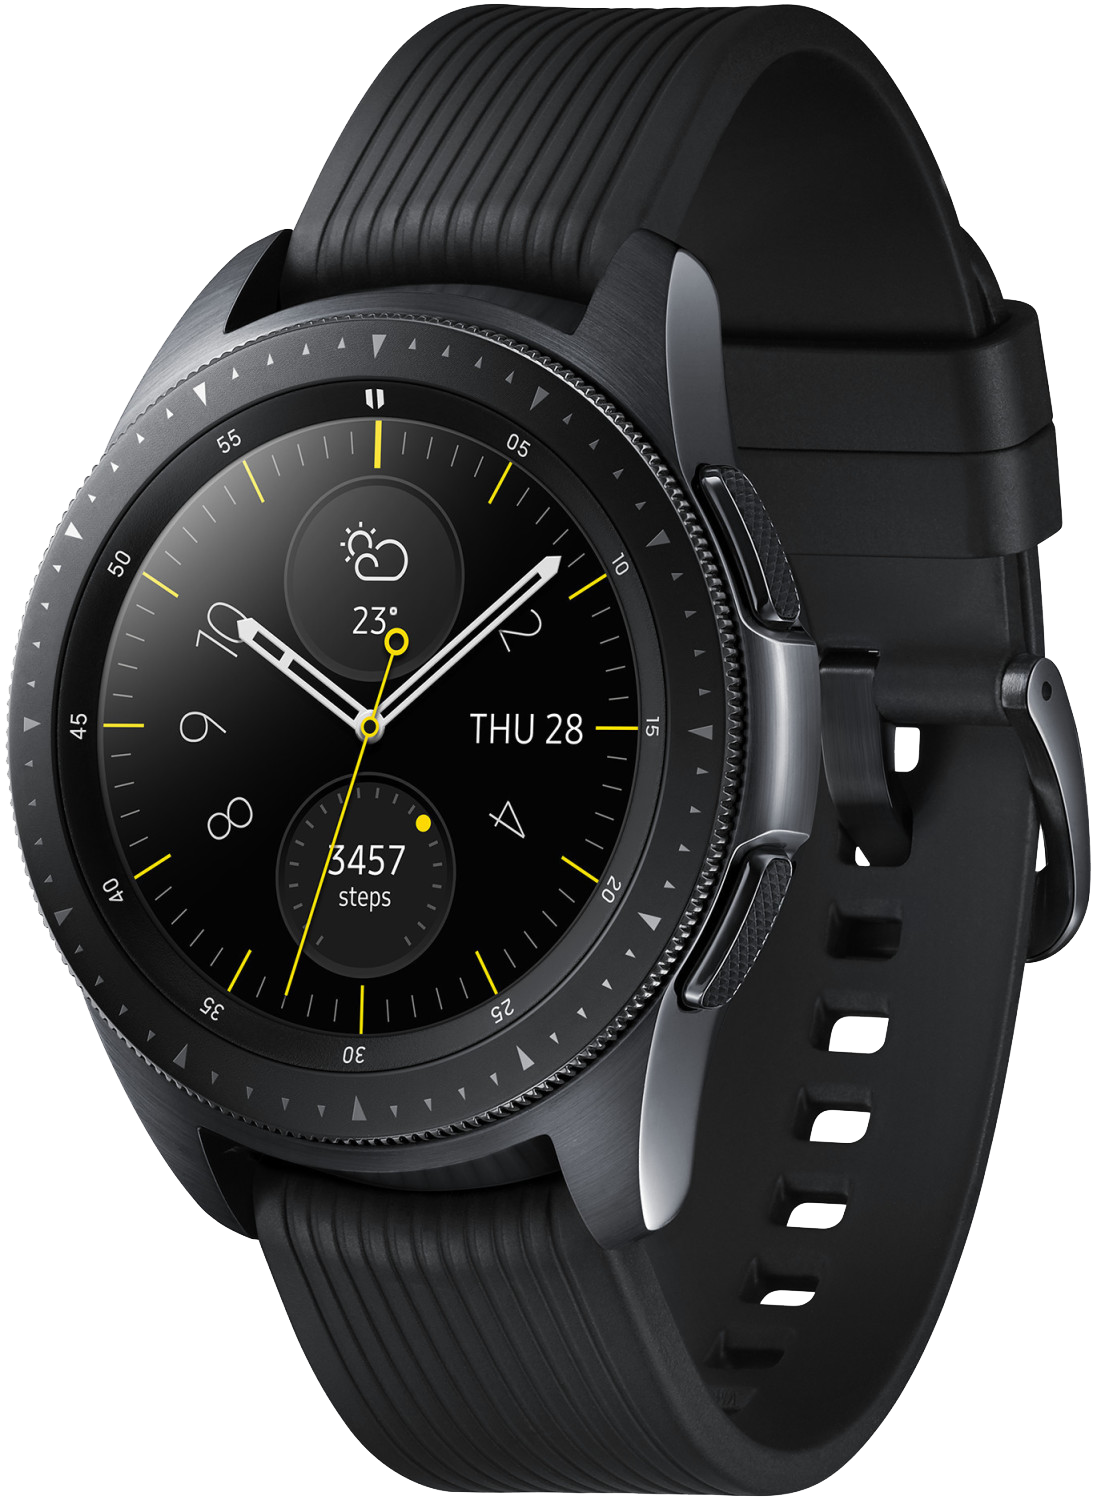 Samsung Galaxy Watch 42mm SM-R810 schwarz - Ohne Vertrag